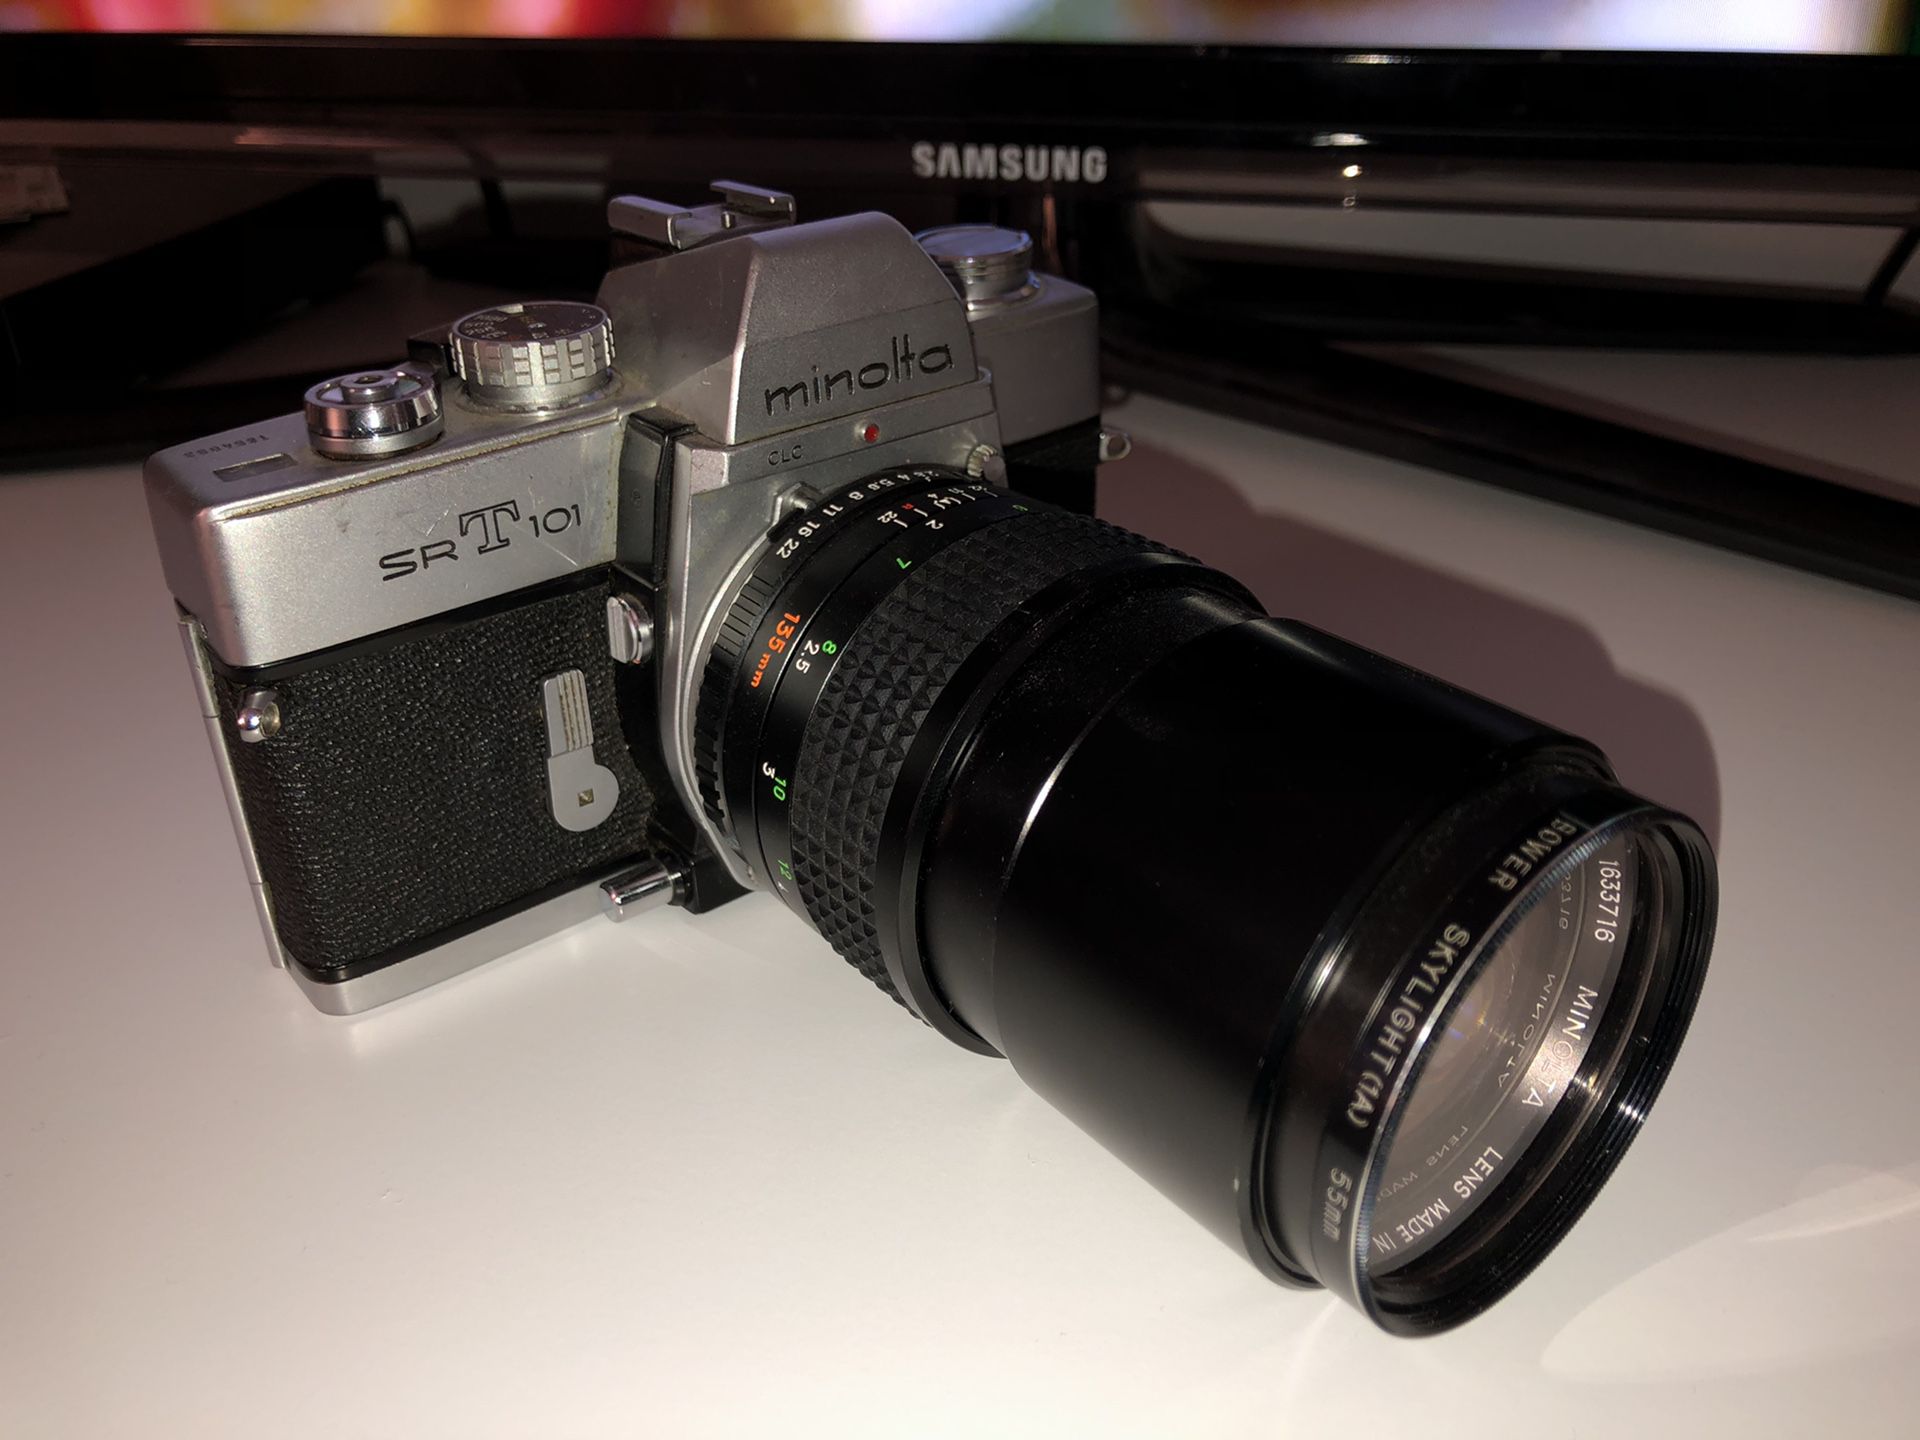 Minolta SRT 101 Film Camera